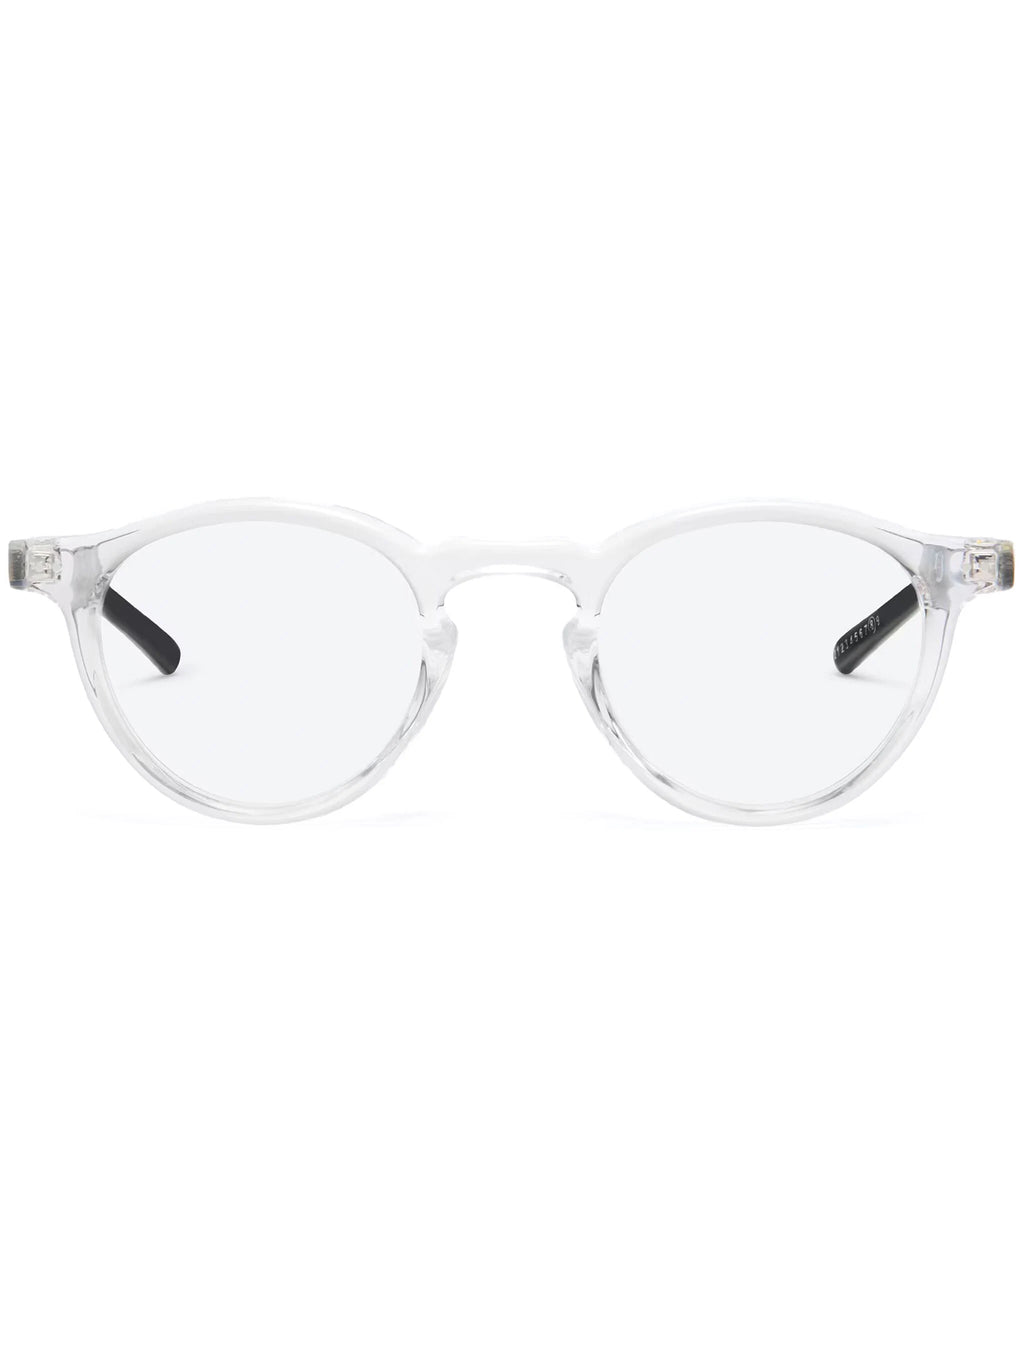 GENTLE MONSTER X MAISON MARGIELA MM116-C1 Glasses